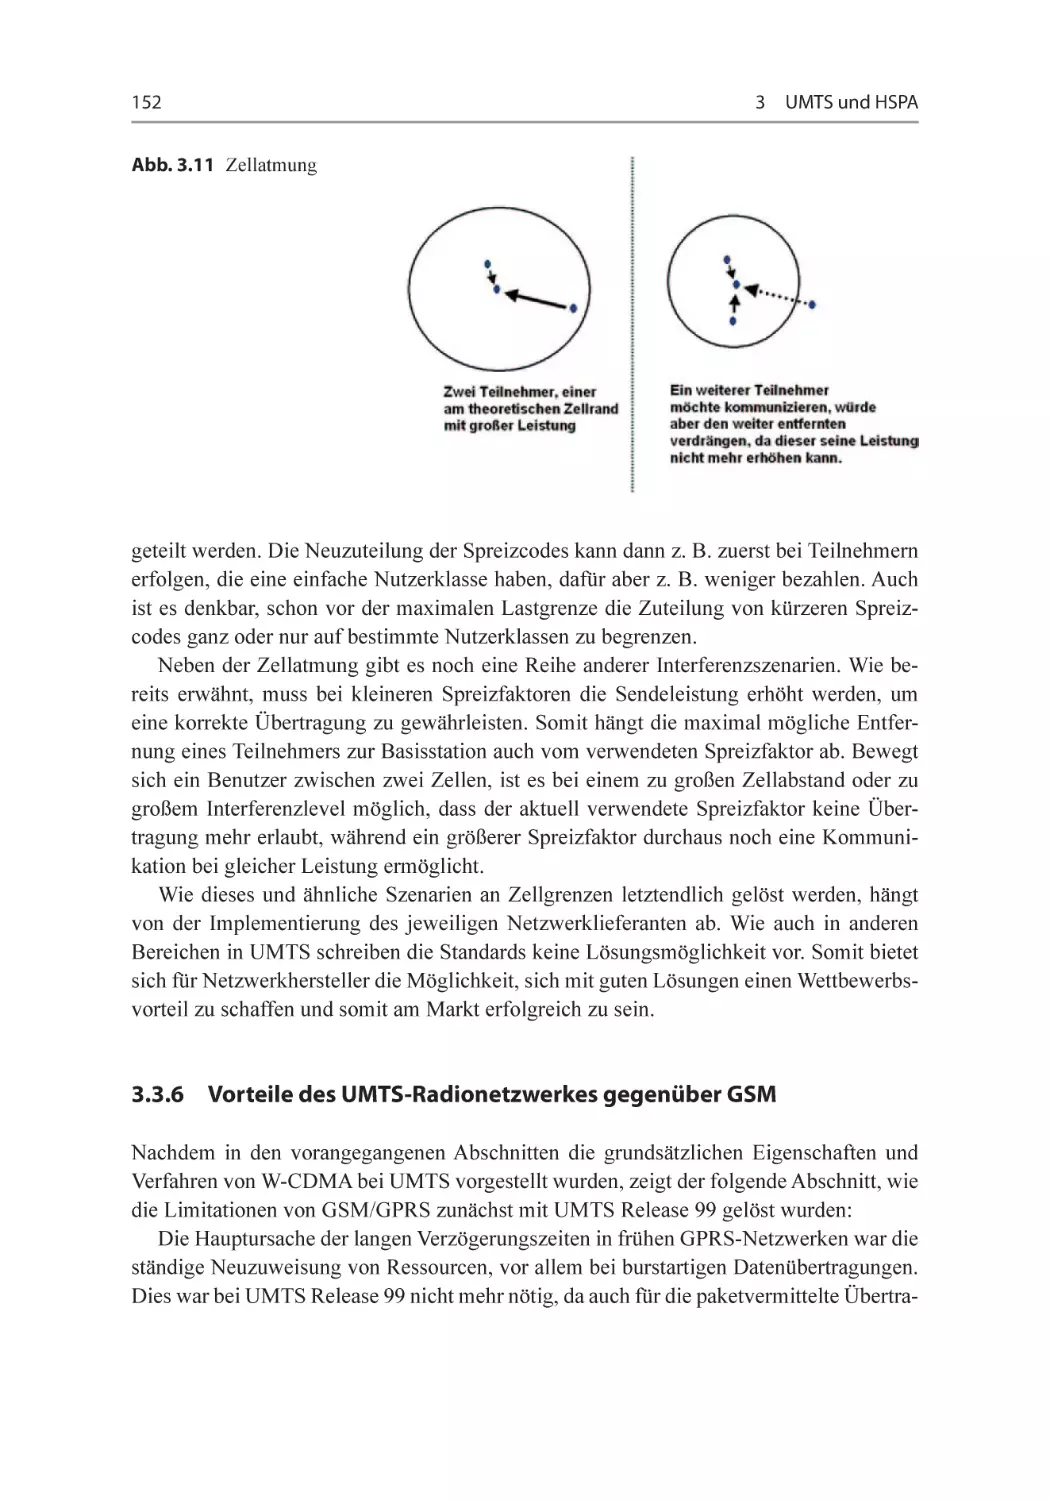 3.3.6 Vorteile des UMTS-Radionetzwerkes gegenüber GSM